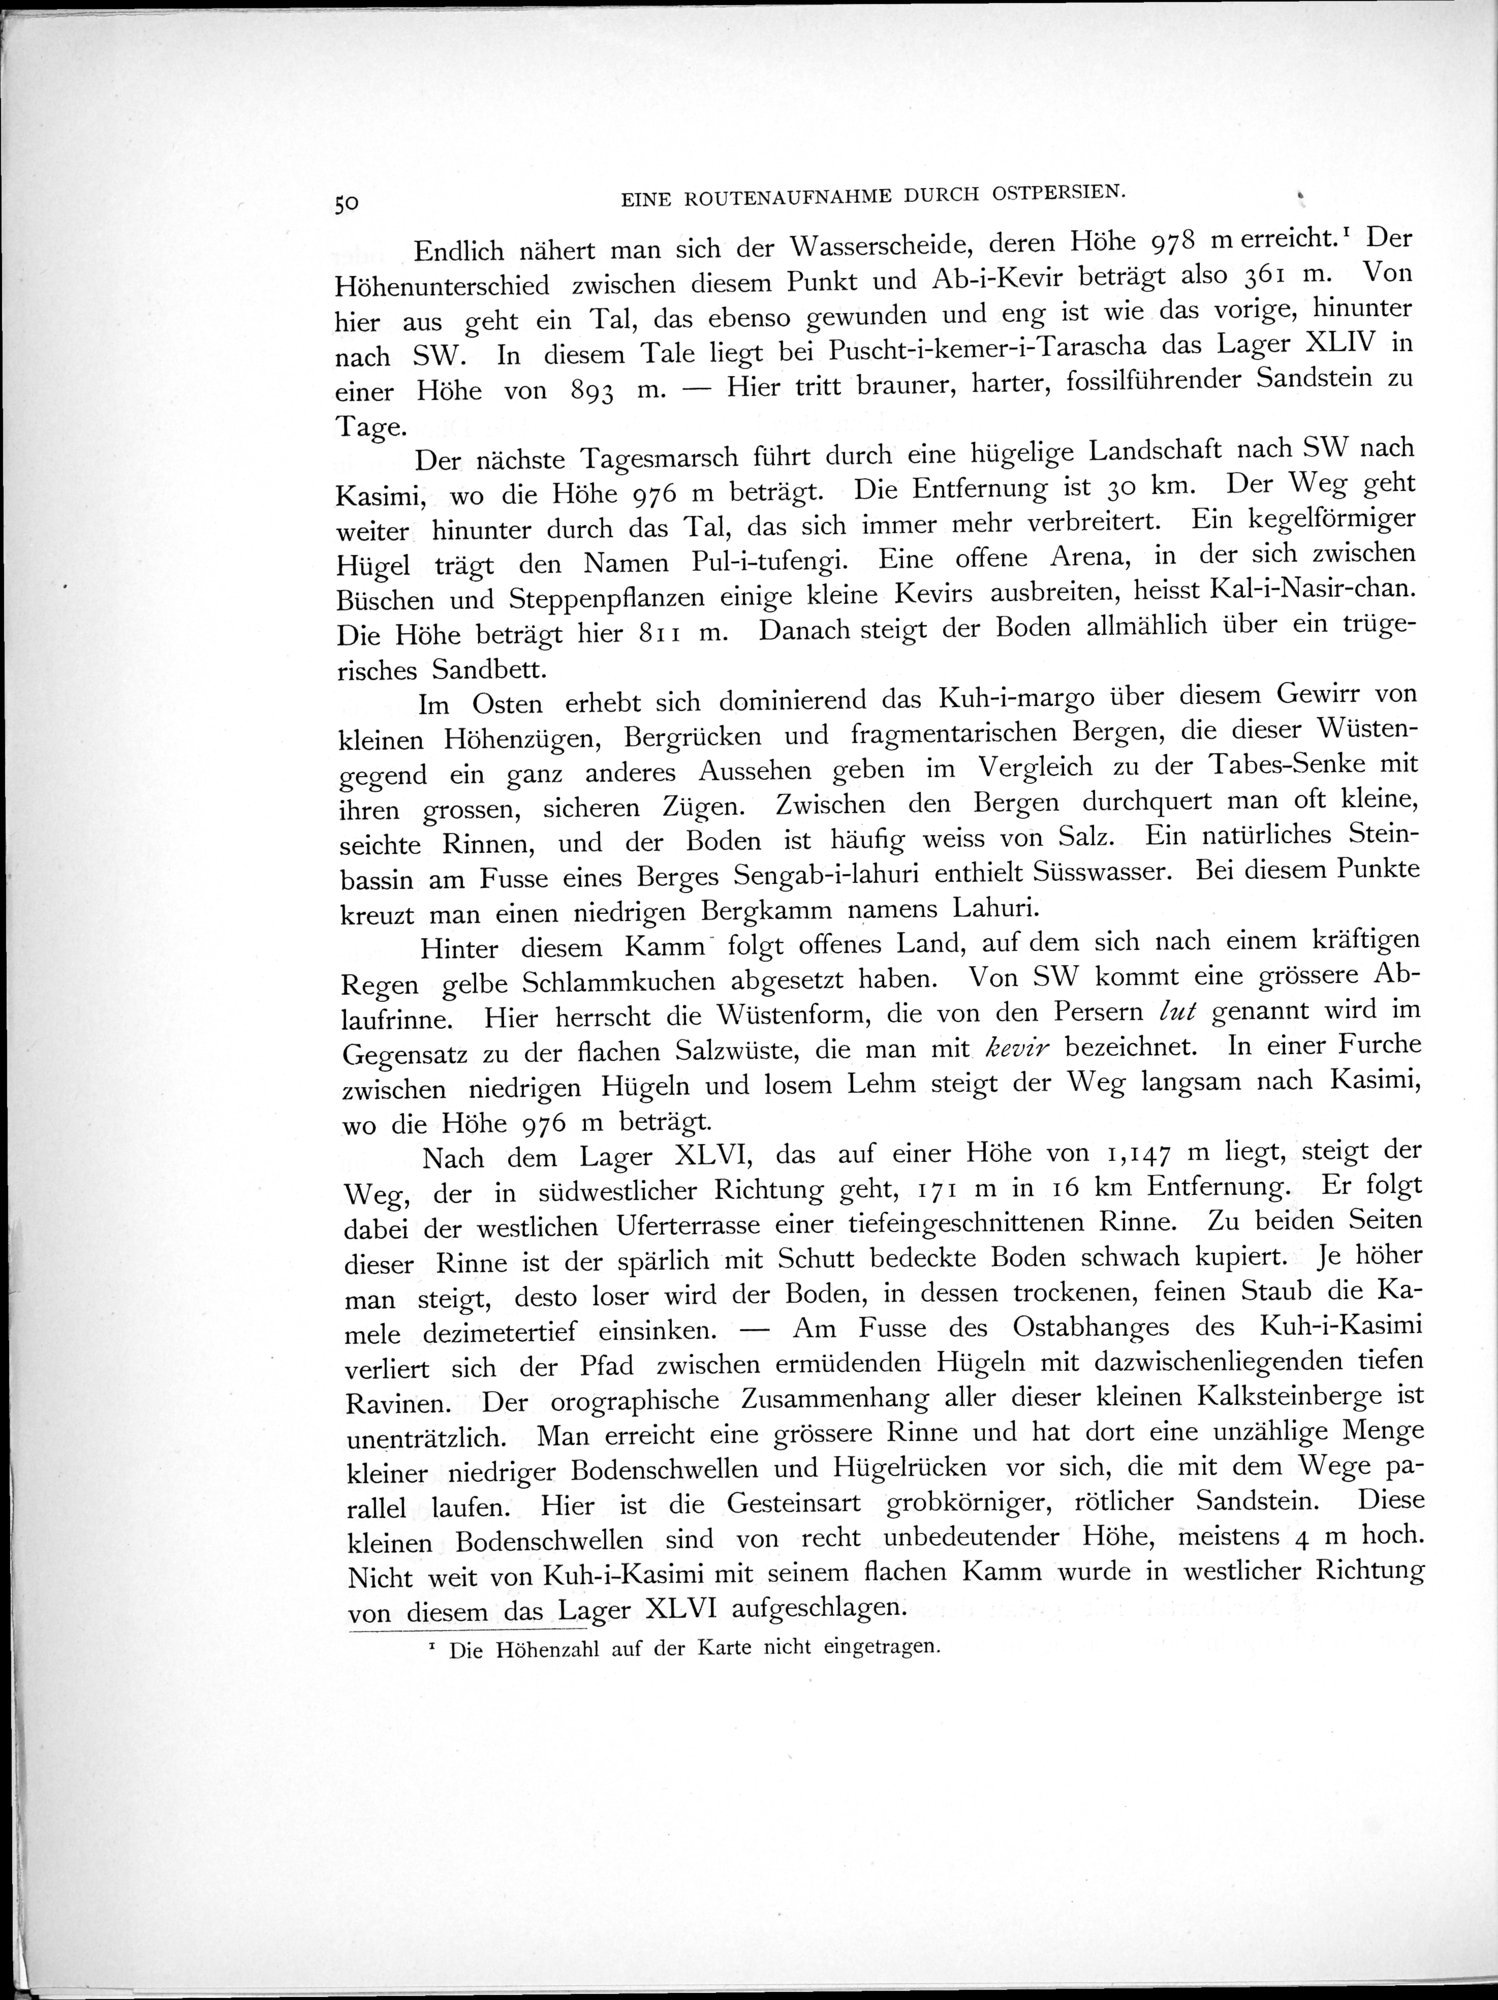 Eine Routenaufnahme durch Ostpersien : vol.1 / Page 162 (Grayscale High Resolution Image)